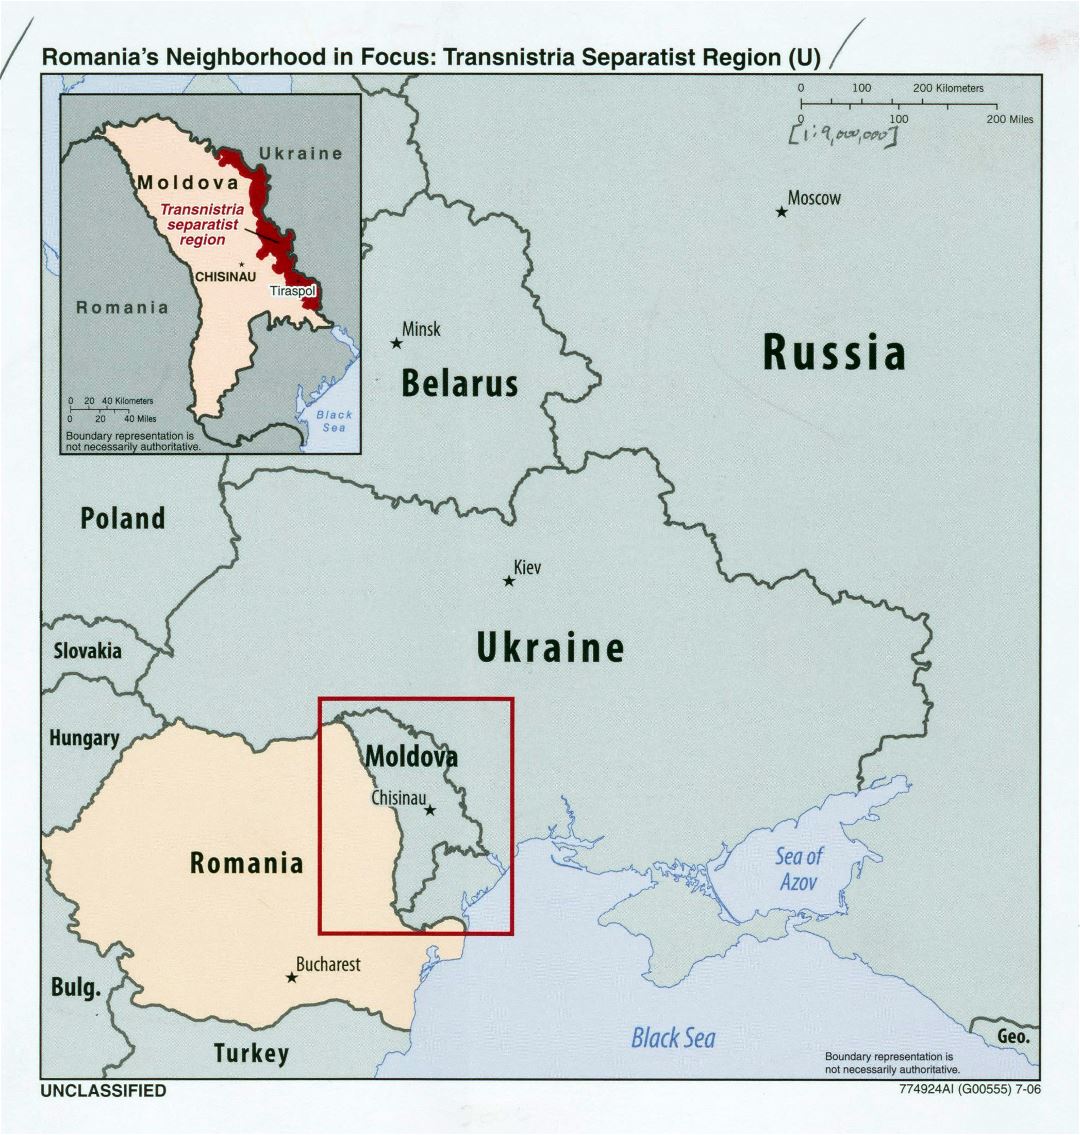 Grande detallado mapa de la zona de Rumanía en foco - región separatista de Transnistria - 2006